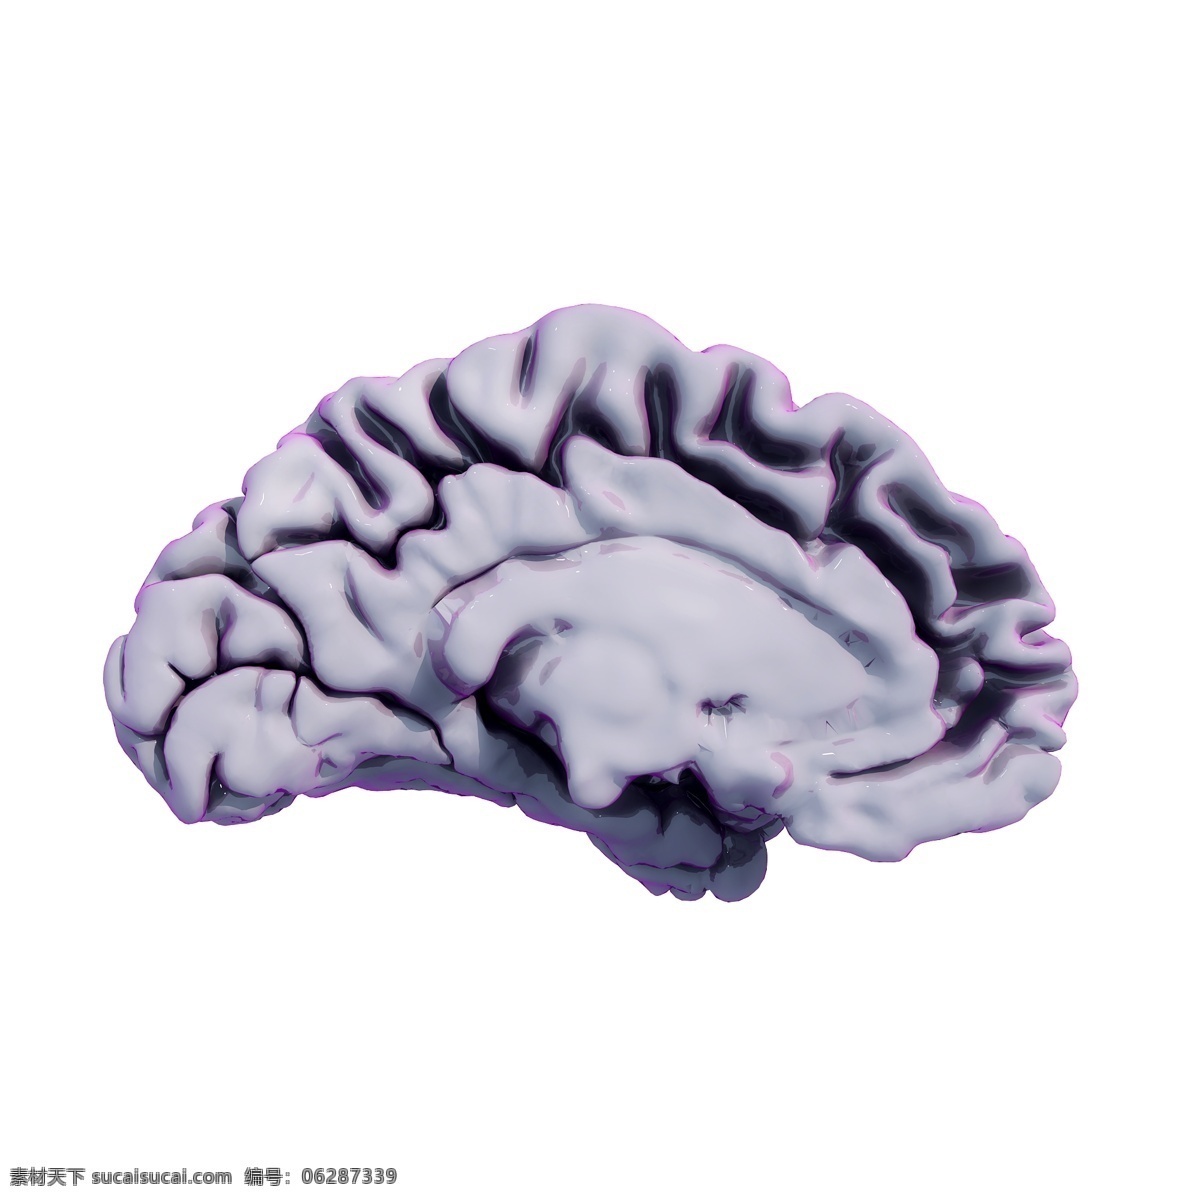 大脑 侧面 图 立体 大脑侧面 幻彩 人脑 医学 科研 精致 质感 科幻 套图 创意 png图